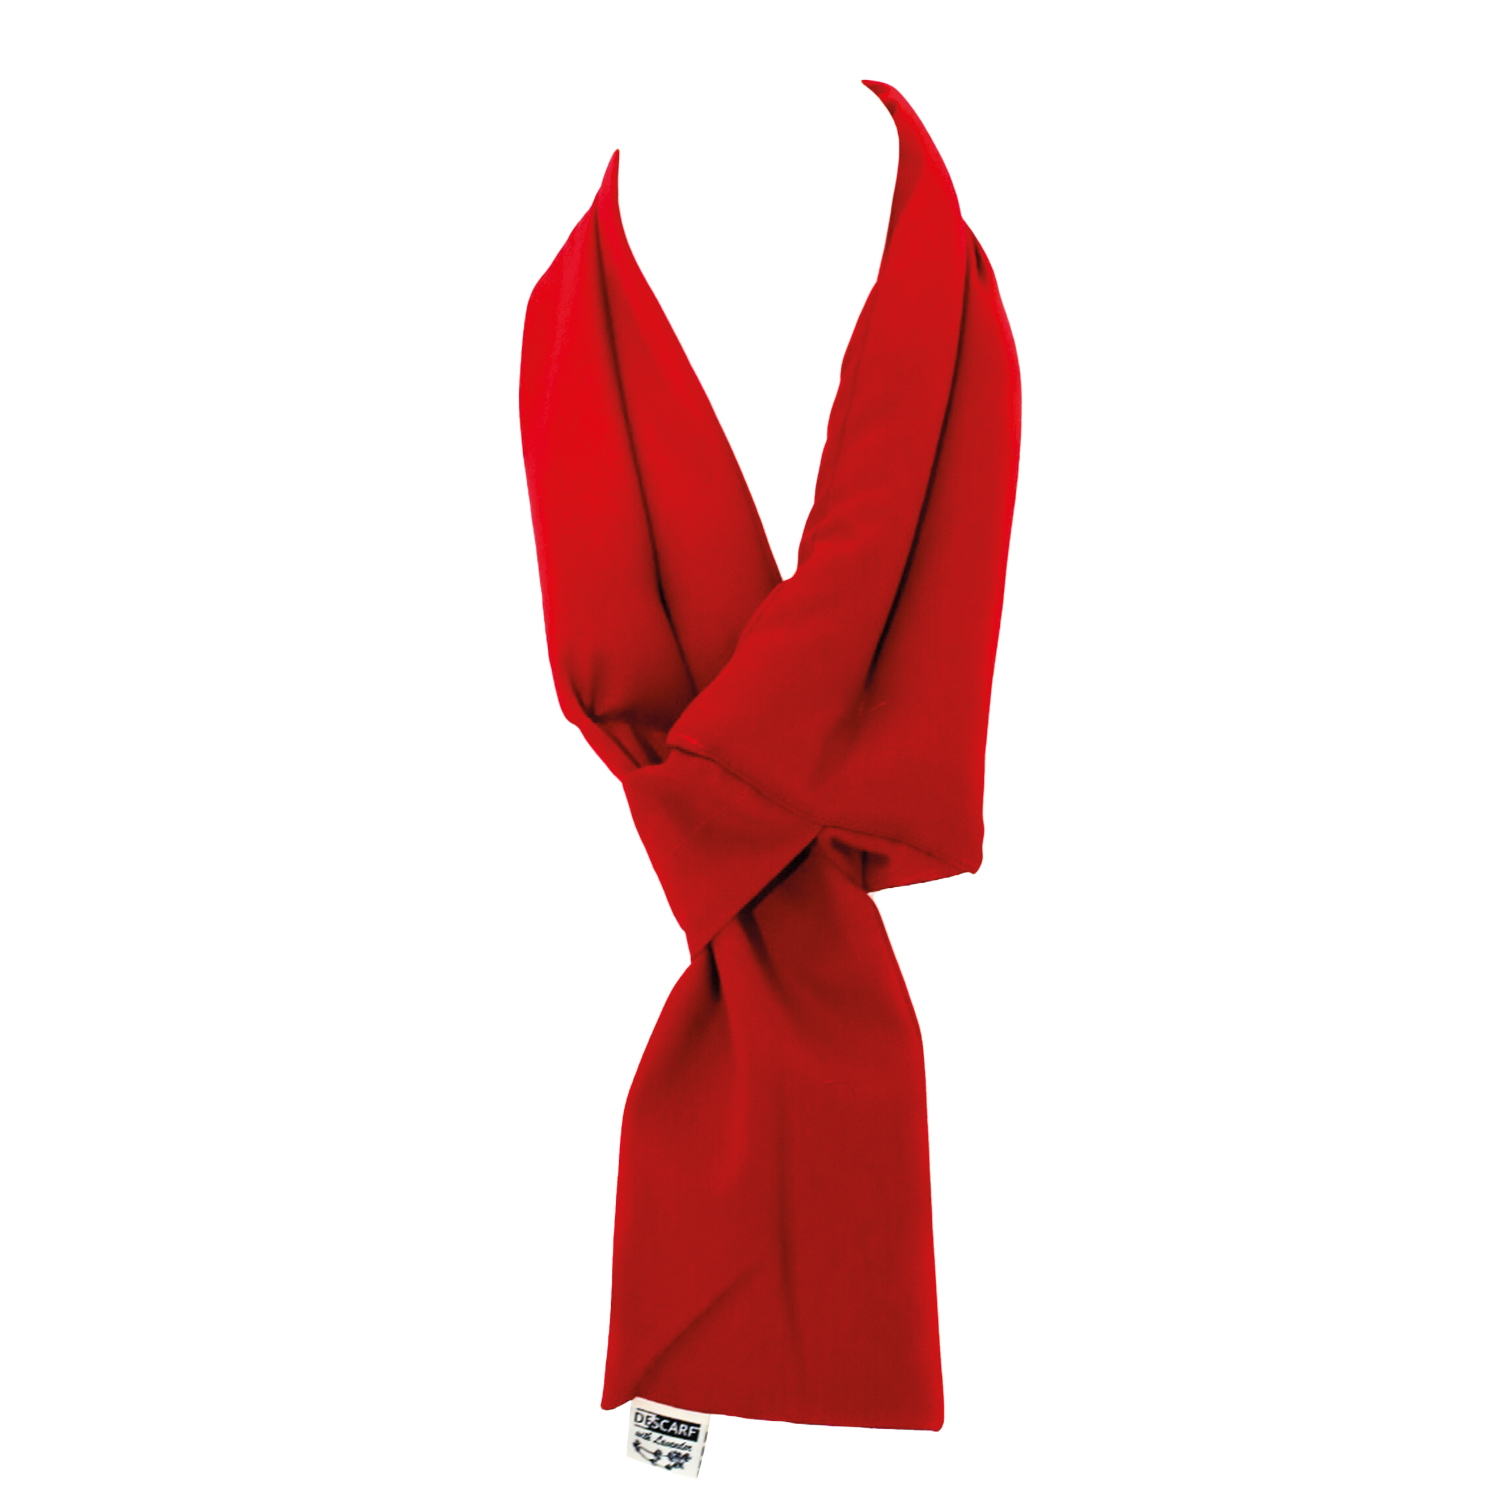 DeScarf warmtesjaal rood